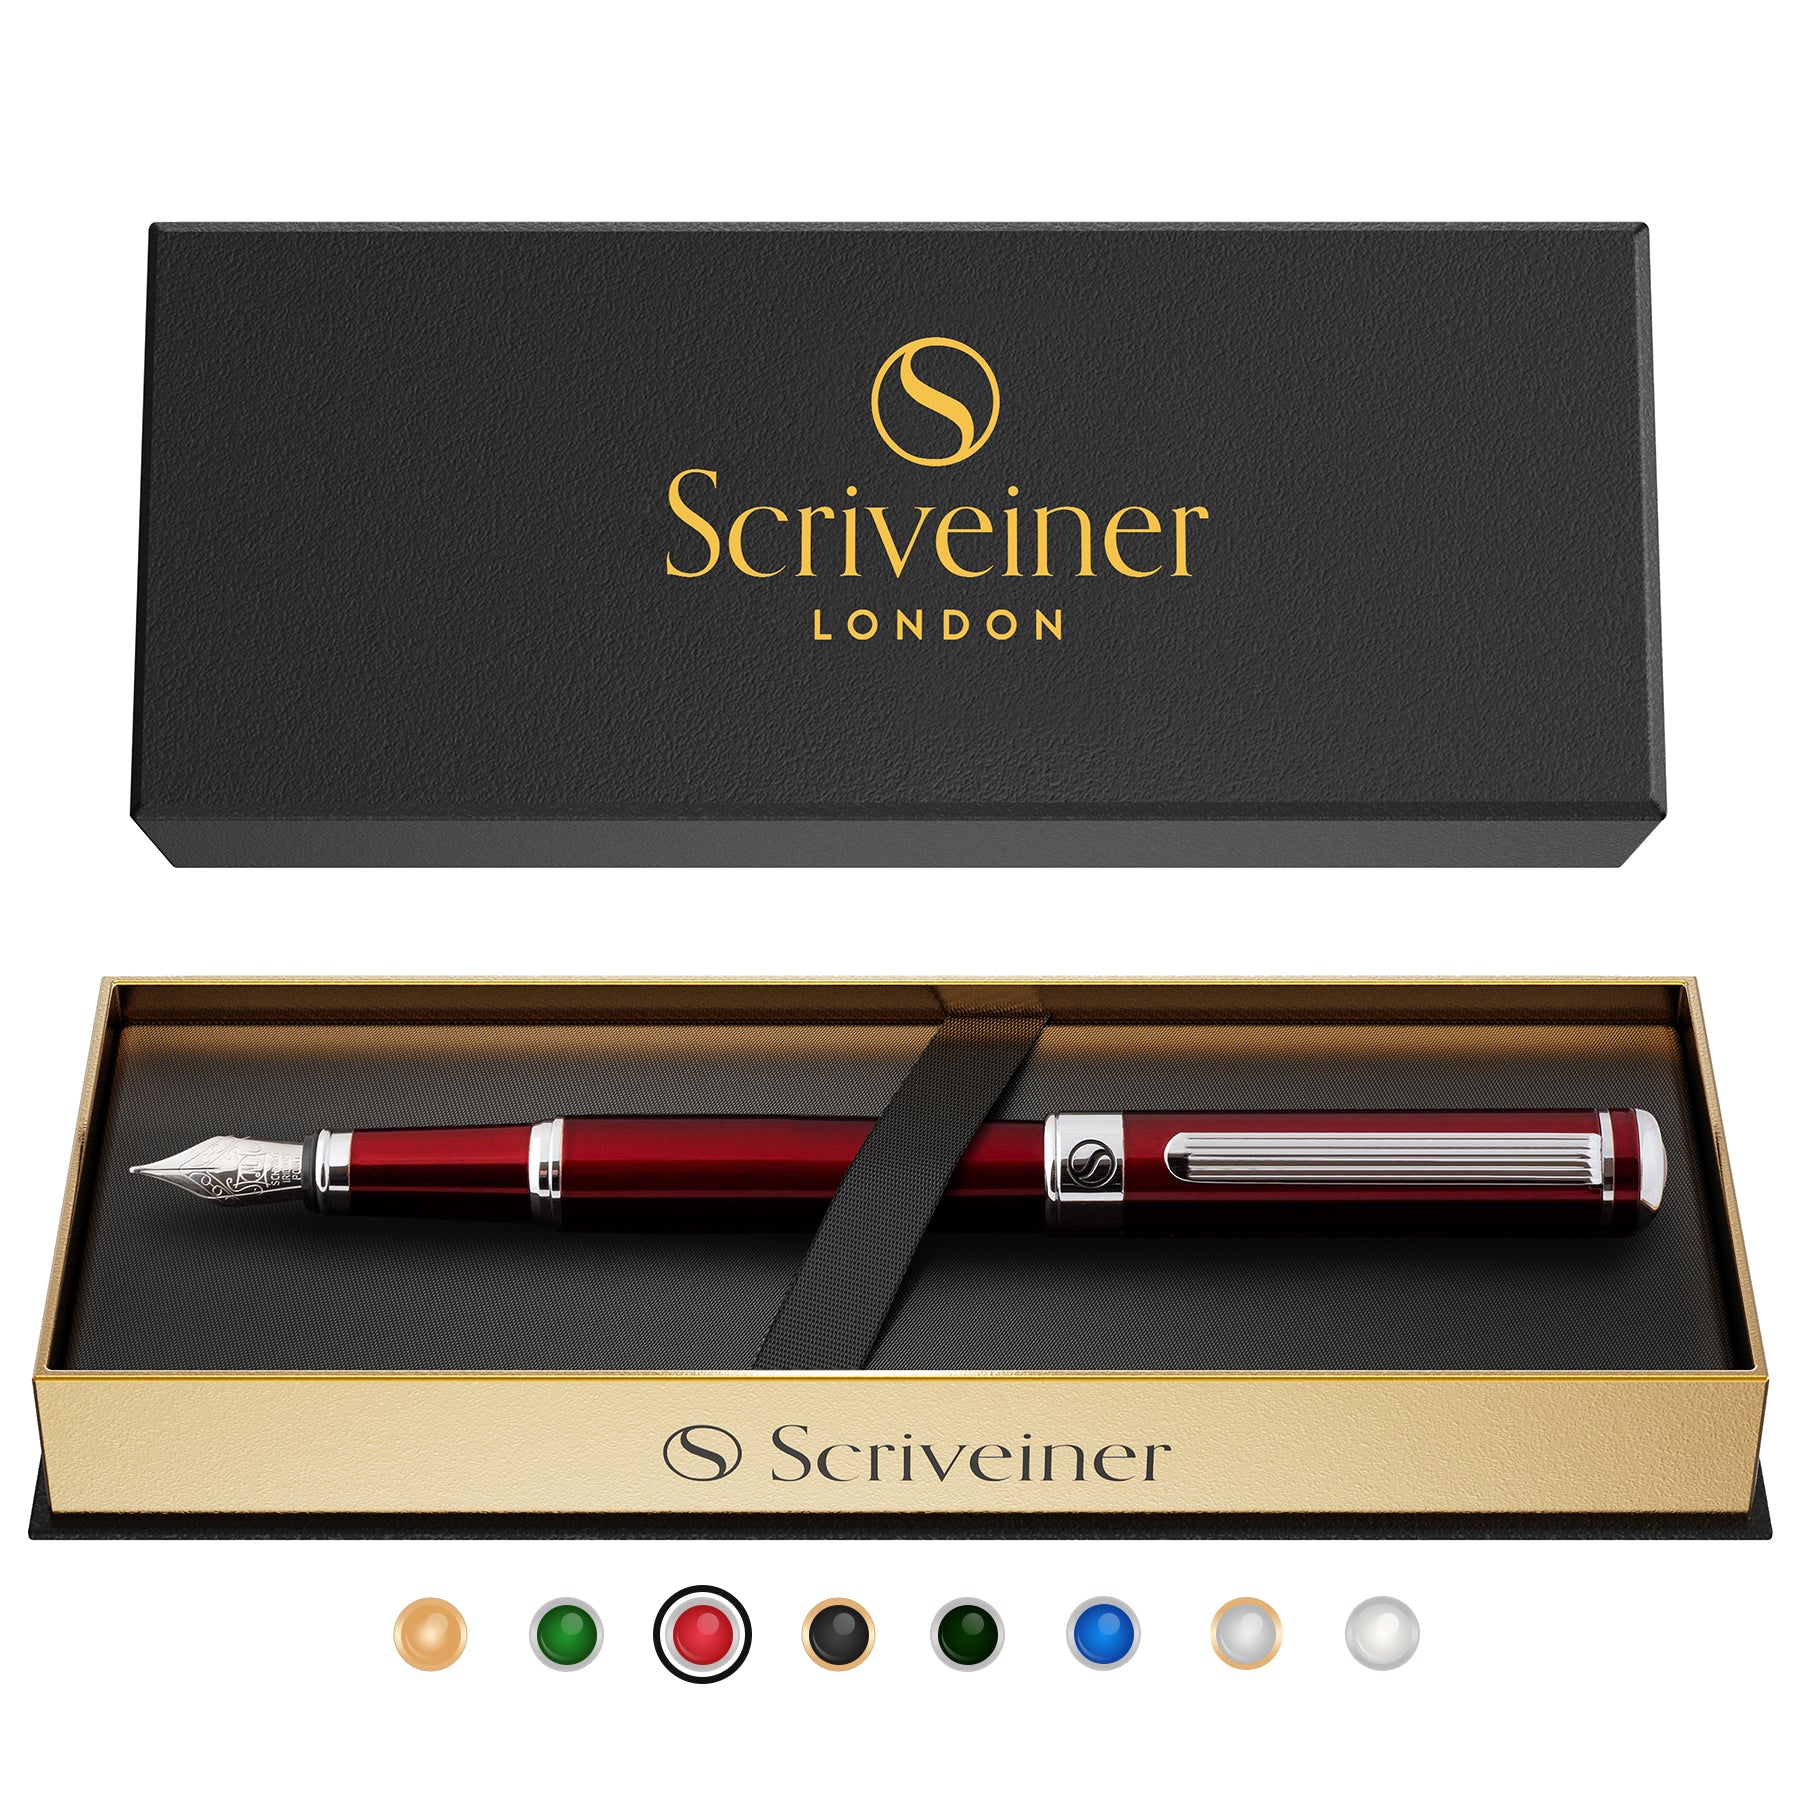 Scriveiner Classic Crimson Red fountain Pen - Medium Nib